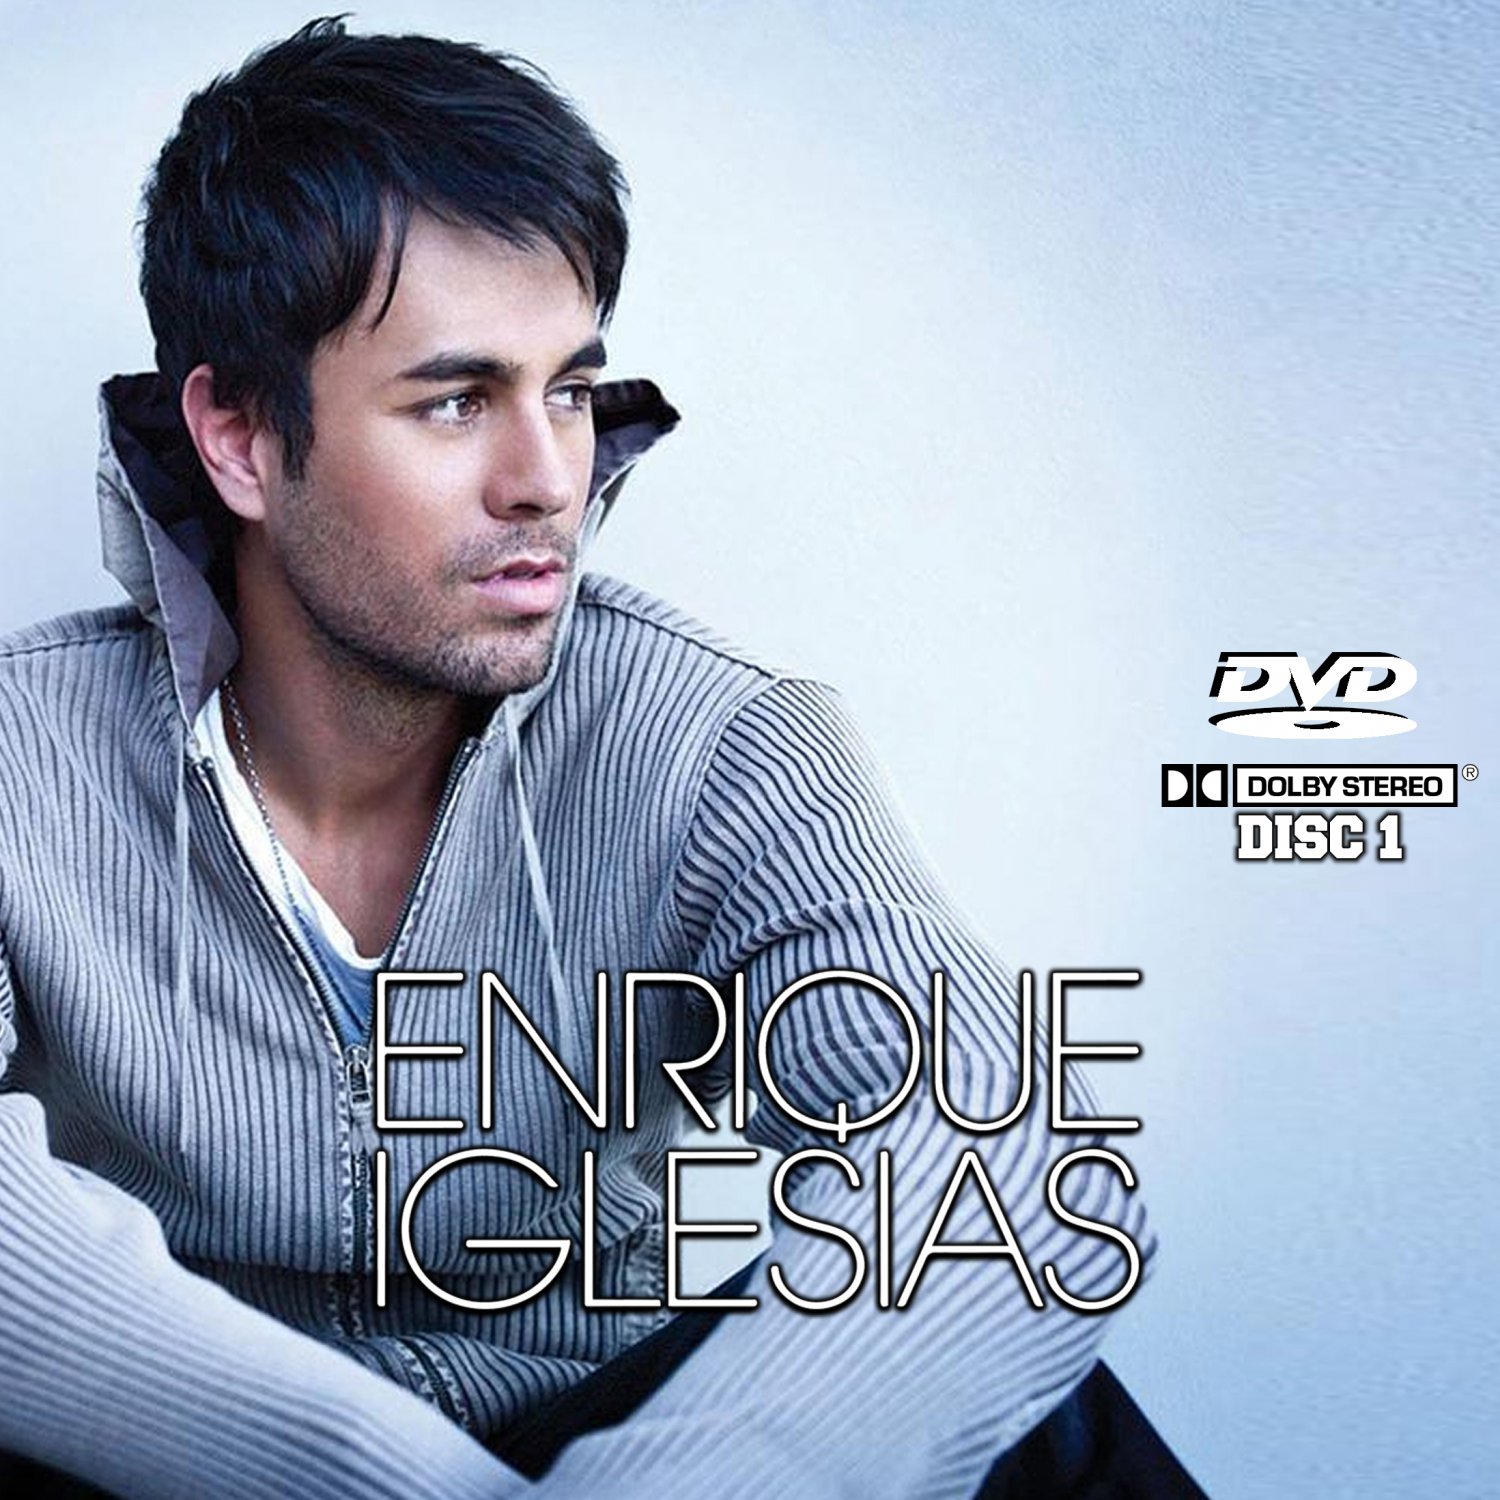 Enrique Iglesias Music Videos Collection (3 DVD's) 67 Music Videos